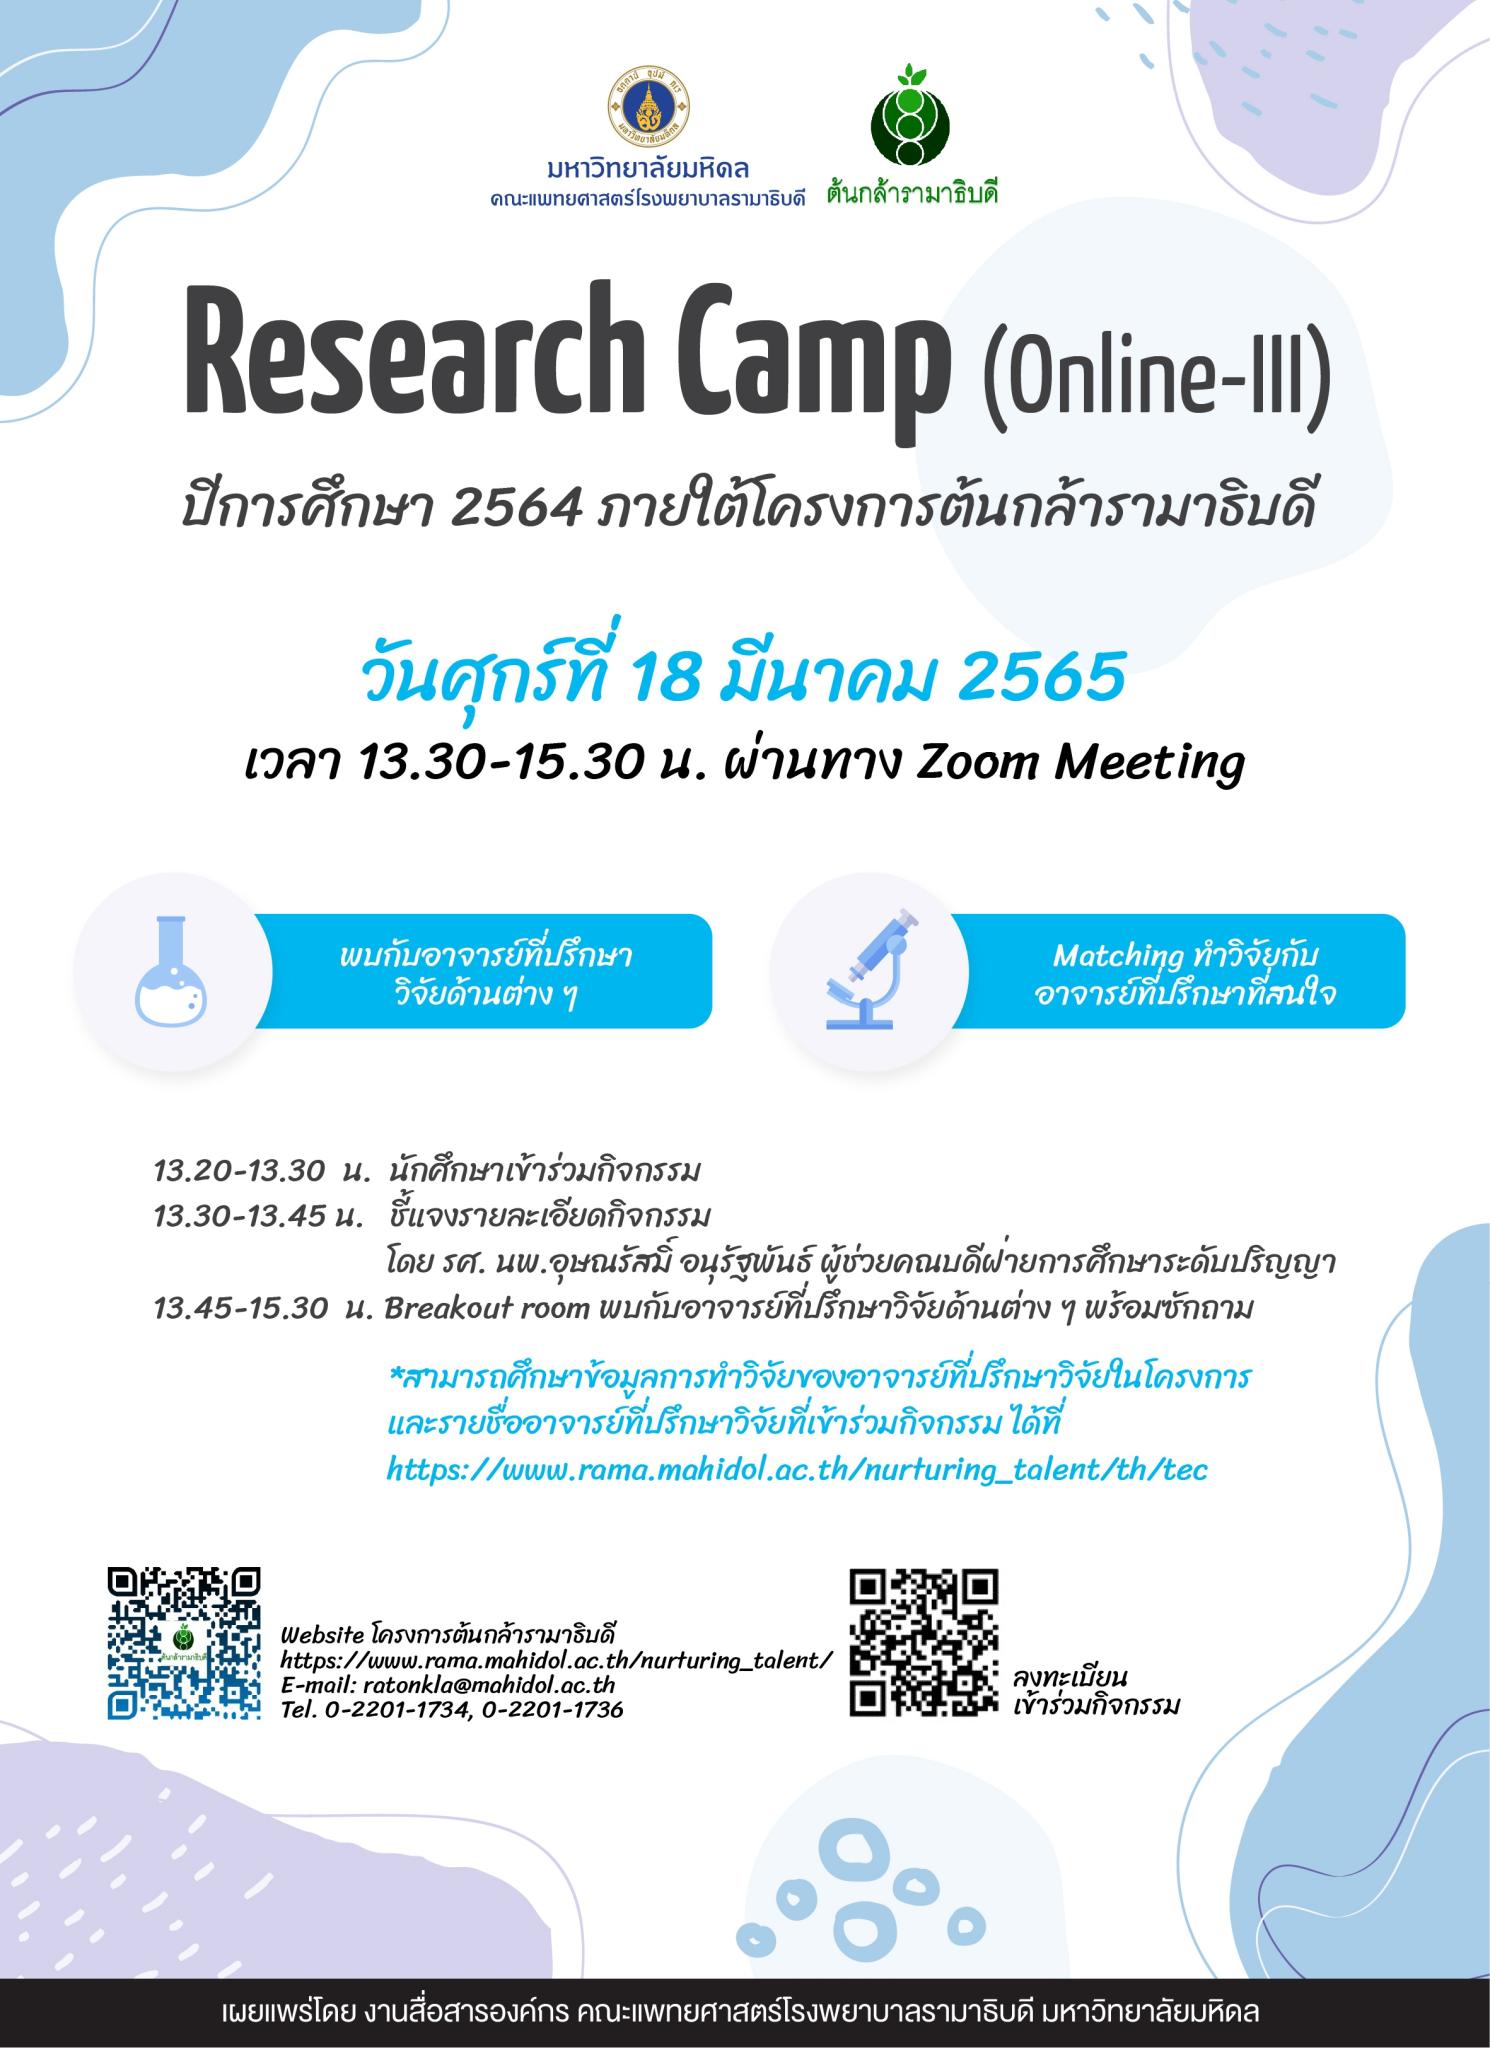 Research Camp (Online-III) ปีการศึกษา 2565 ภายใต้โครงการต้นกล้ารามาธิบดี